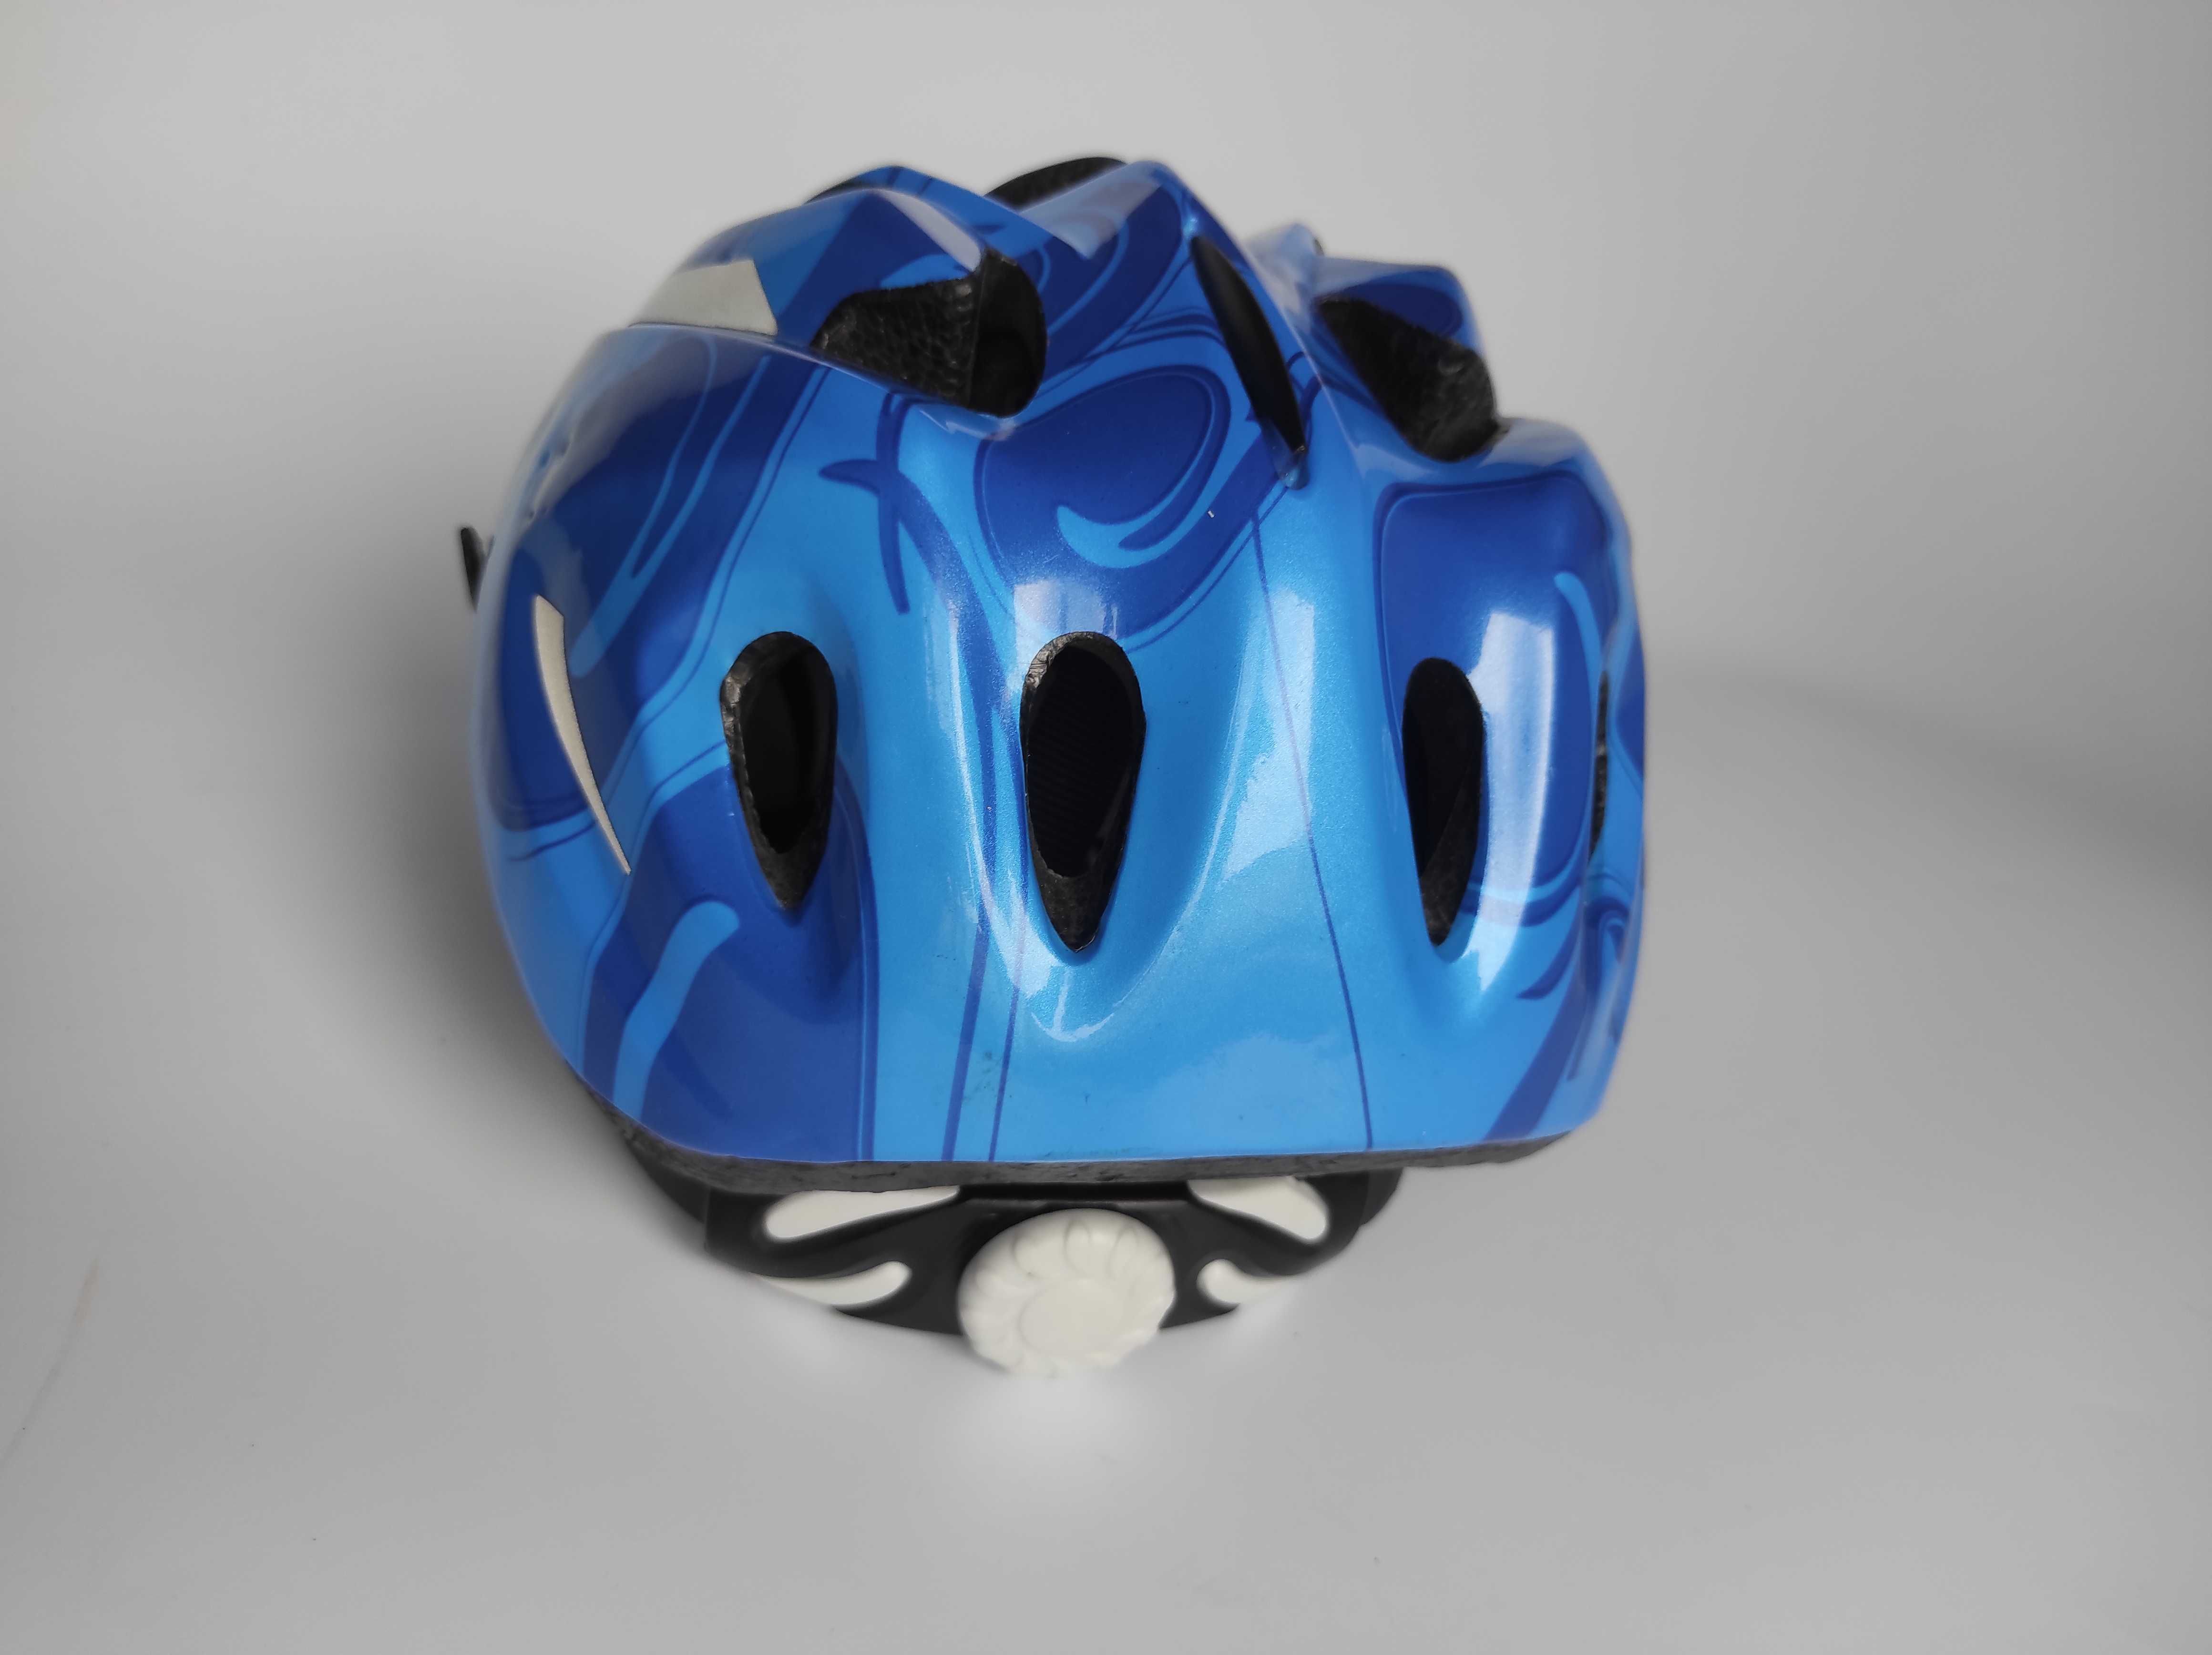 Детский защитный шлем, размер 48-52см, велосипедный, Германия.